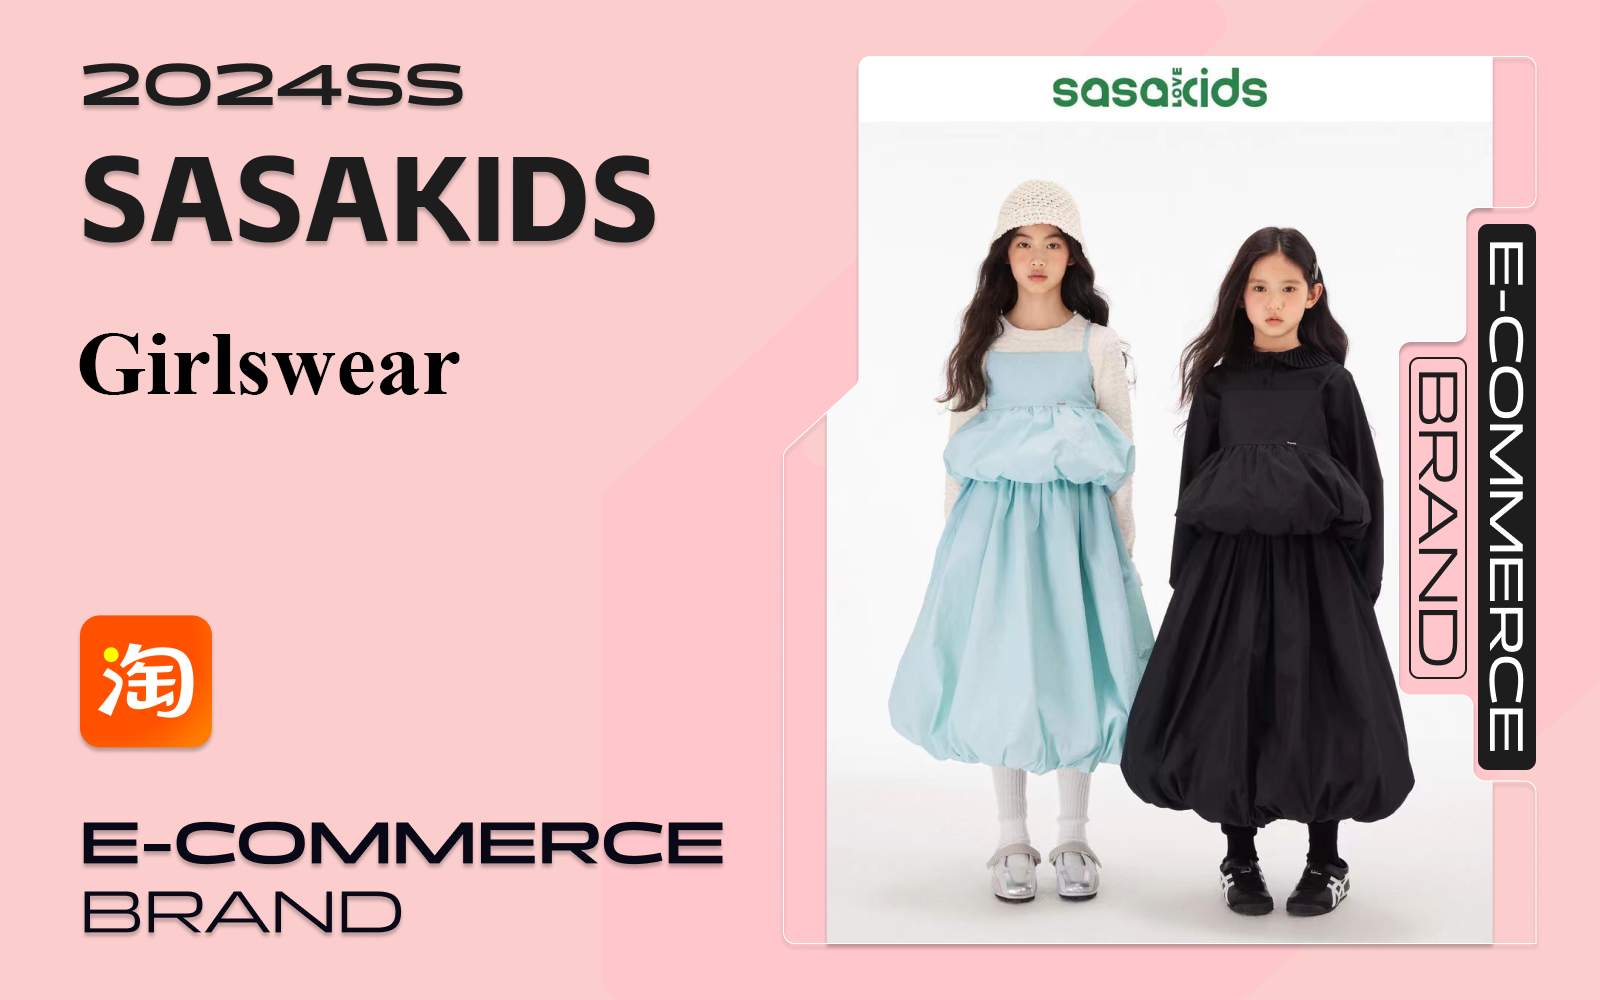 SASAKIDS -- The Analysis of Girls' E-commerce Brand